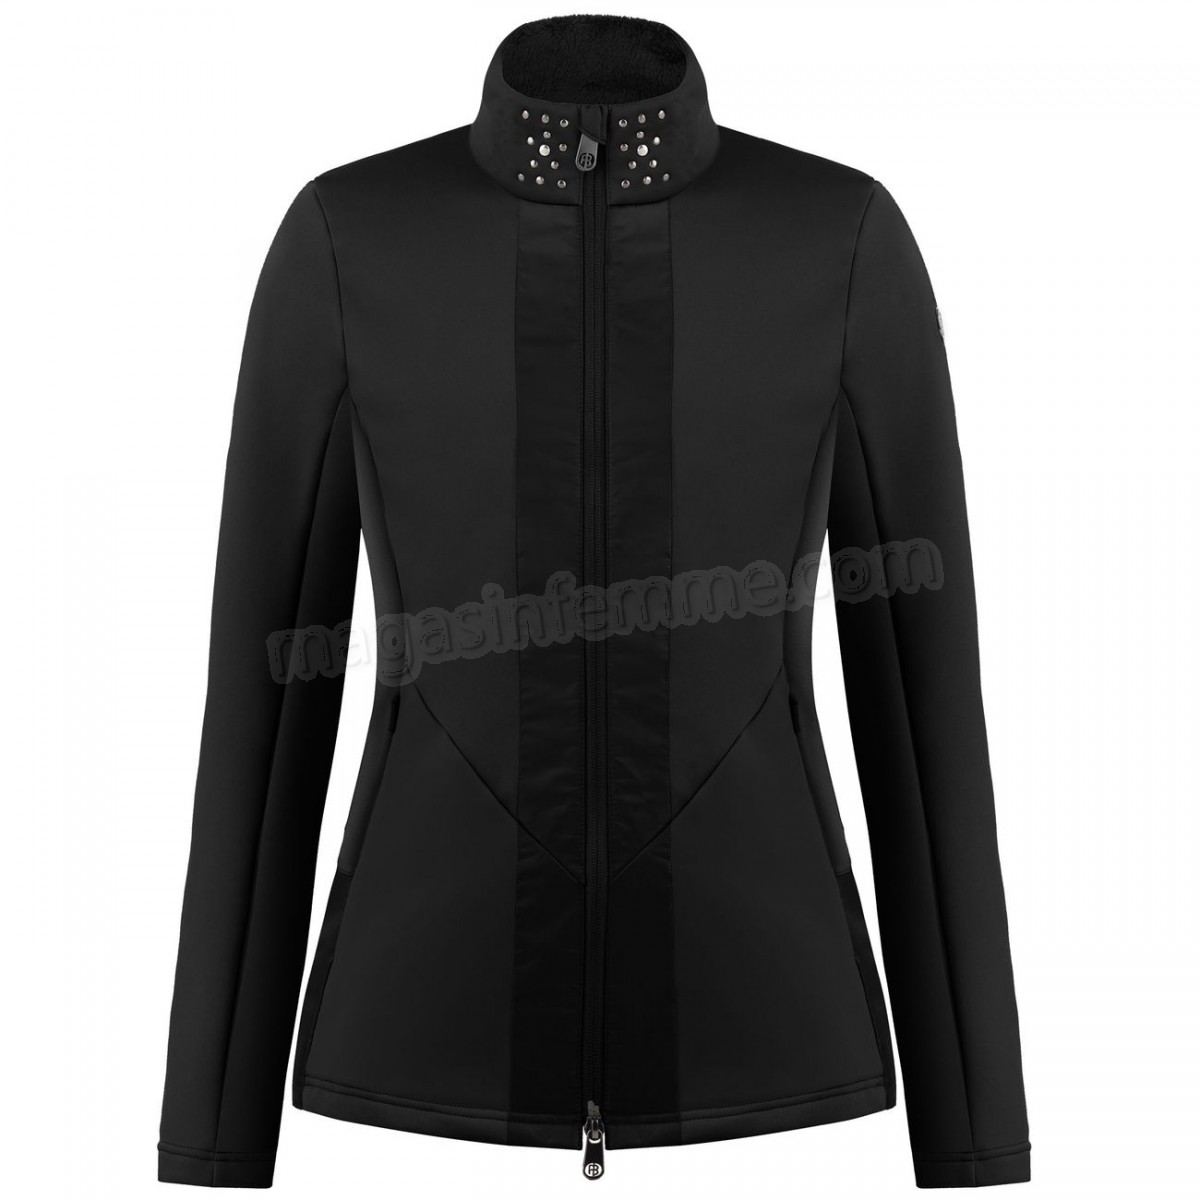 Poivre Blanc-Sports d'hiver femme POIVRE BLANC Veste En Polaire Poivre Blanc Hybrid Stretch Fleece Jacket 1702 Black Femme en solde - -1